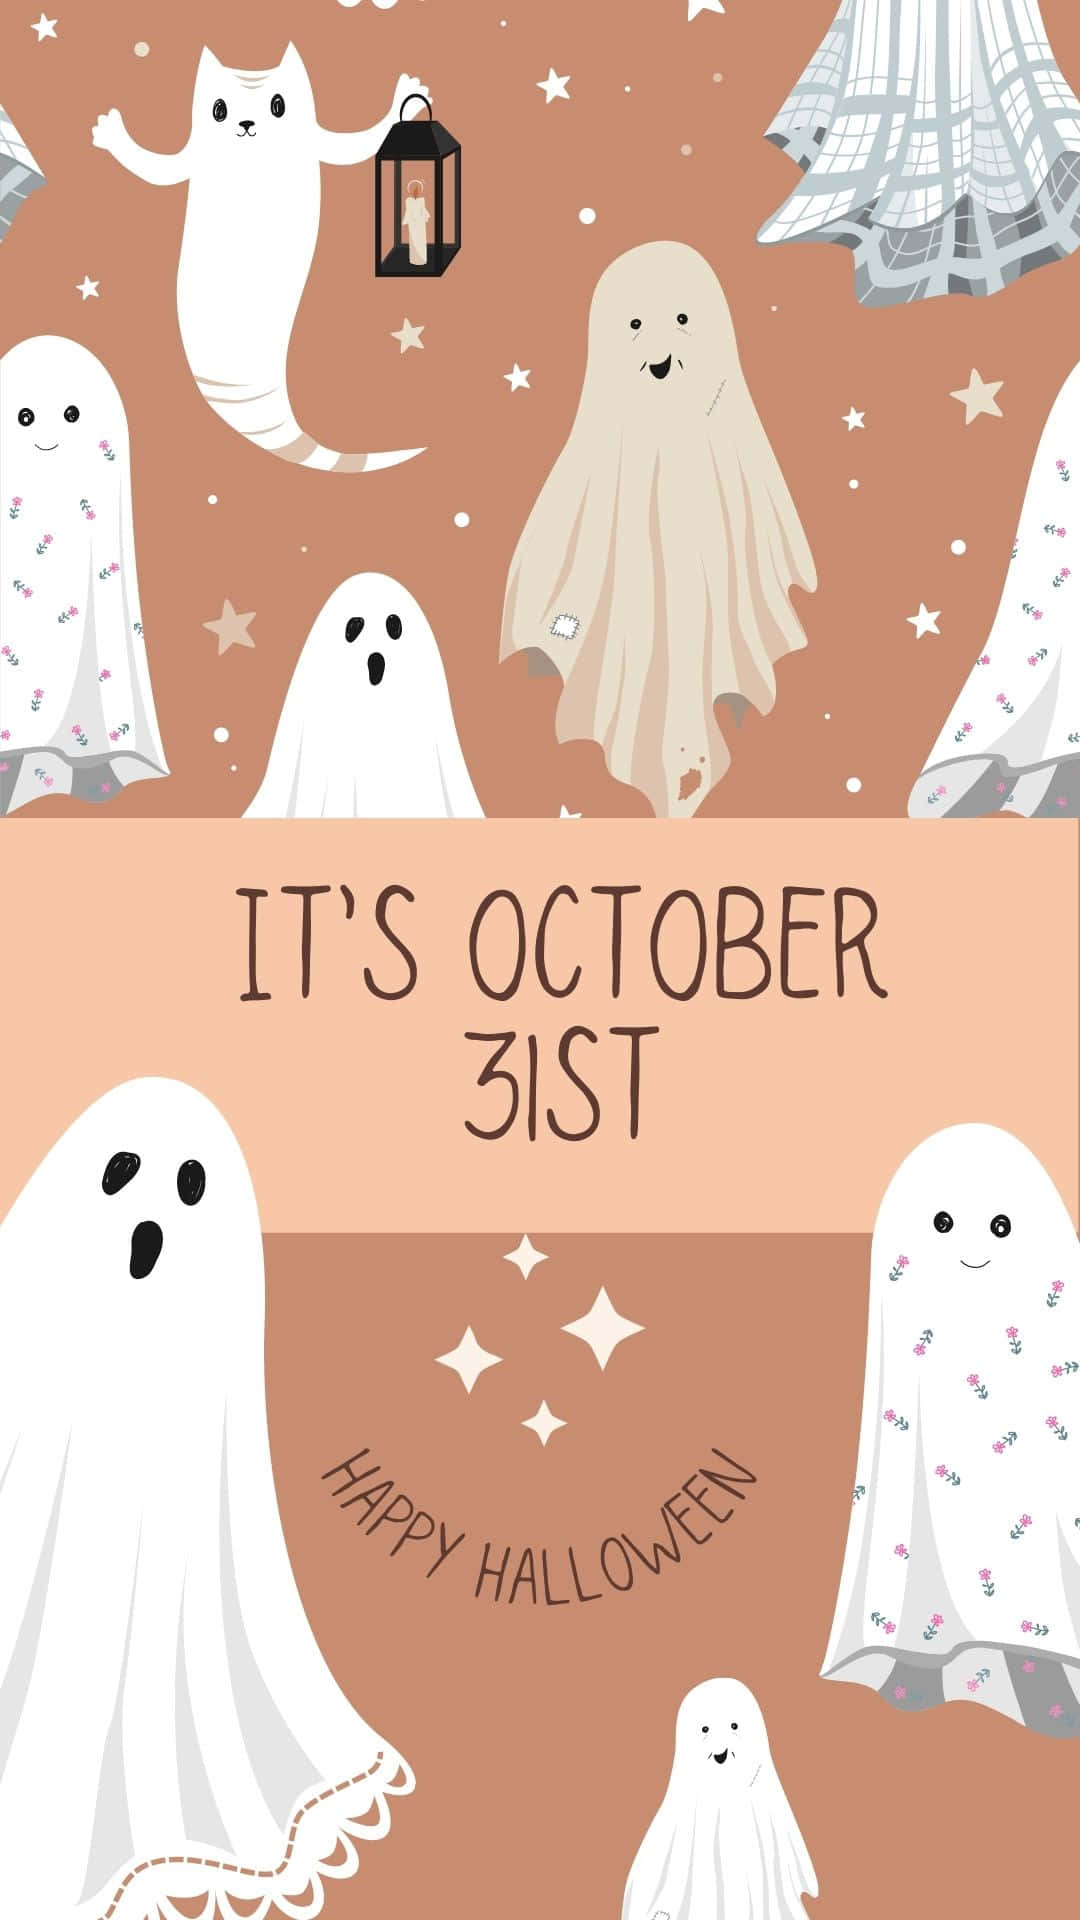 "It's almost Halloween night!" Wallpaper